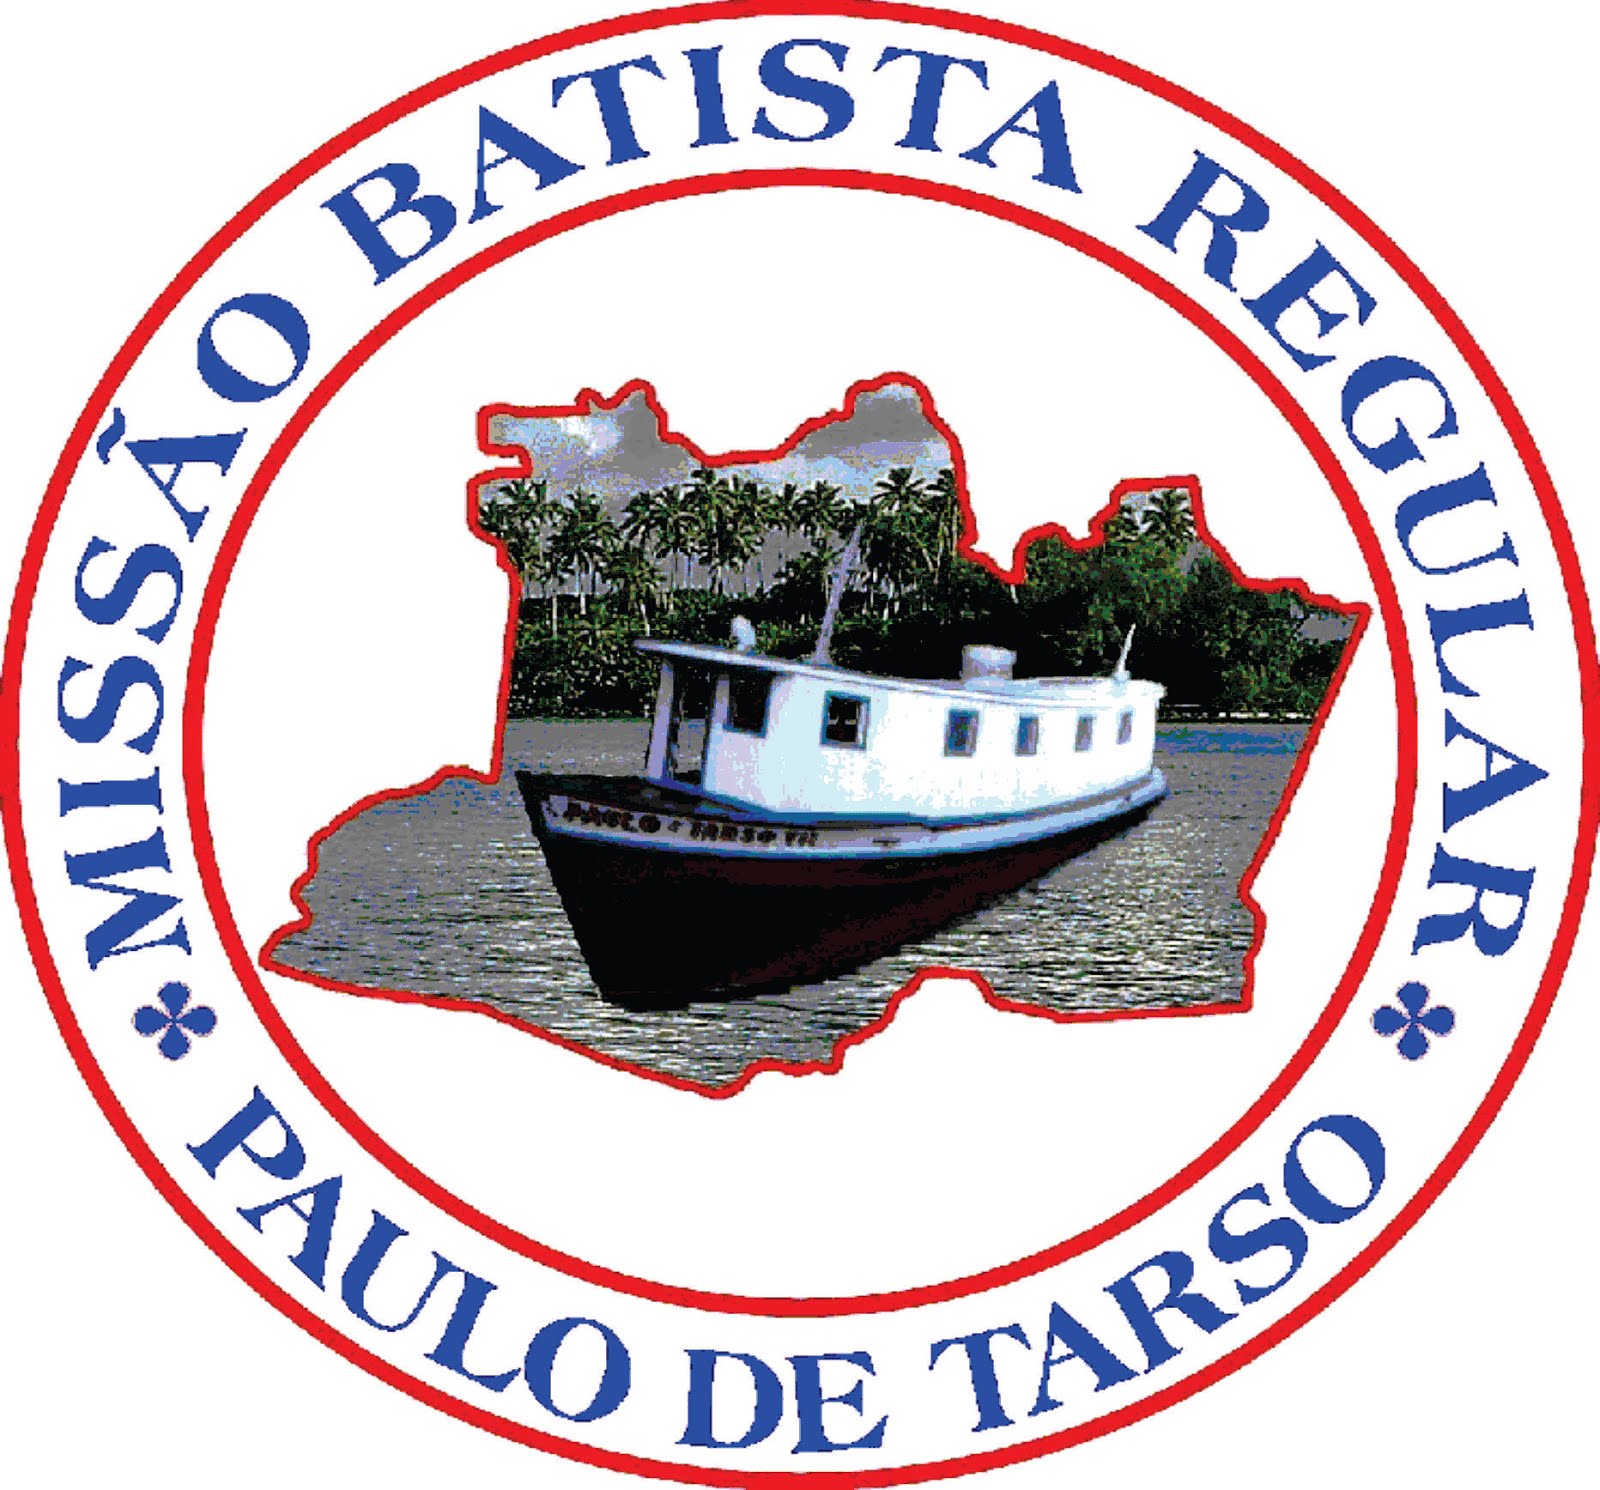 Missão Batista Regular Paulo de Tarso